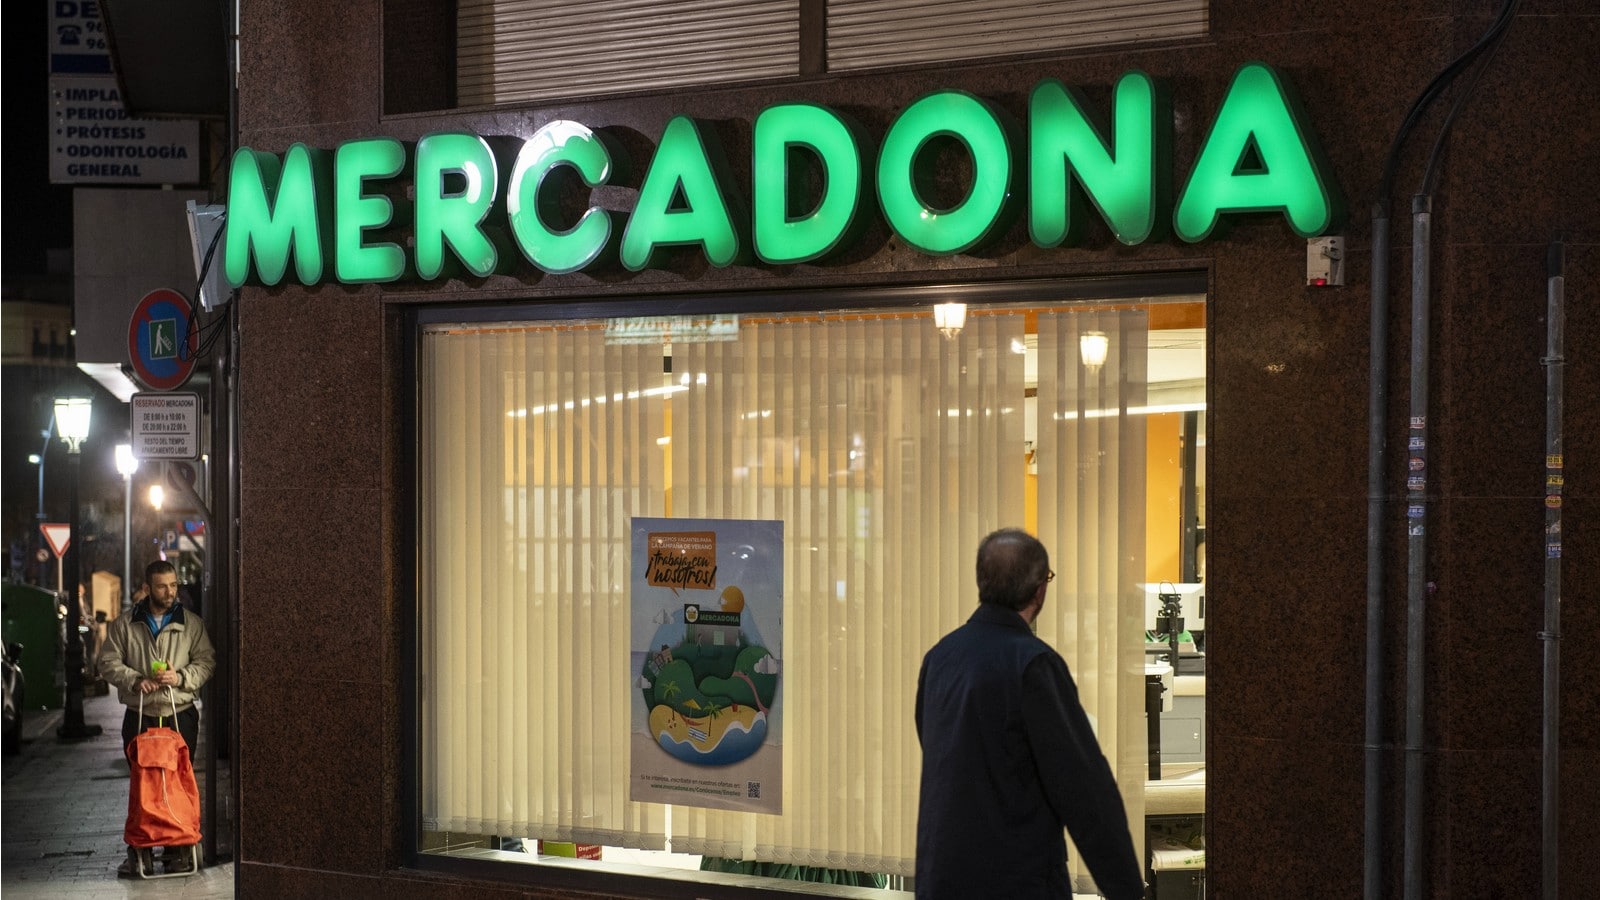 Mercadona, une chaîne de supermarchés espagnols,
Auteurs  : Budrul Chukrut / SOPA Images/Sip/SIPA,
Numéro de reportage  : SIPAUSA30198132_000021.